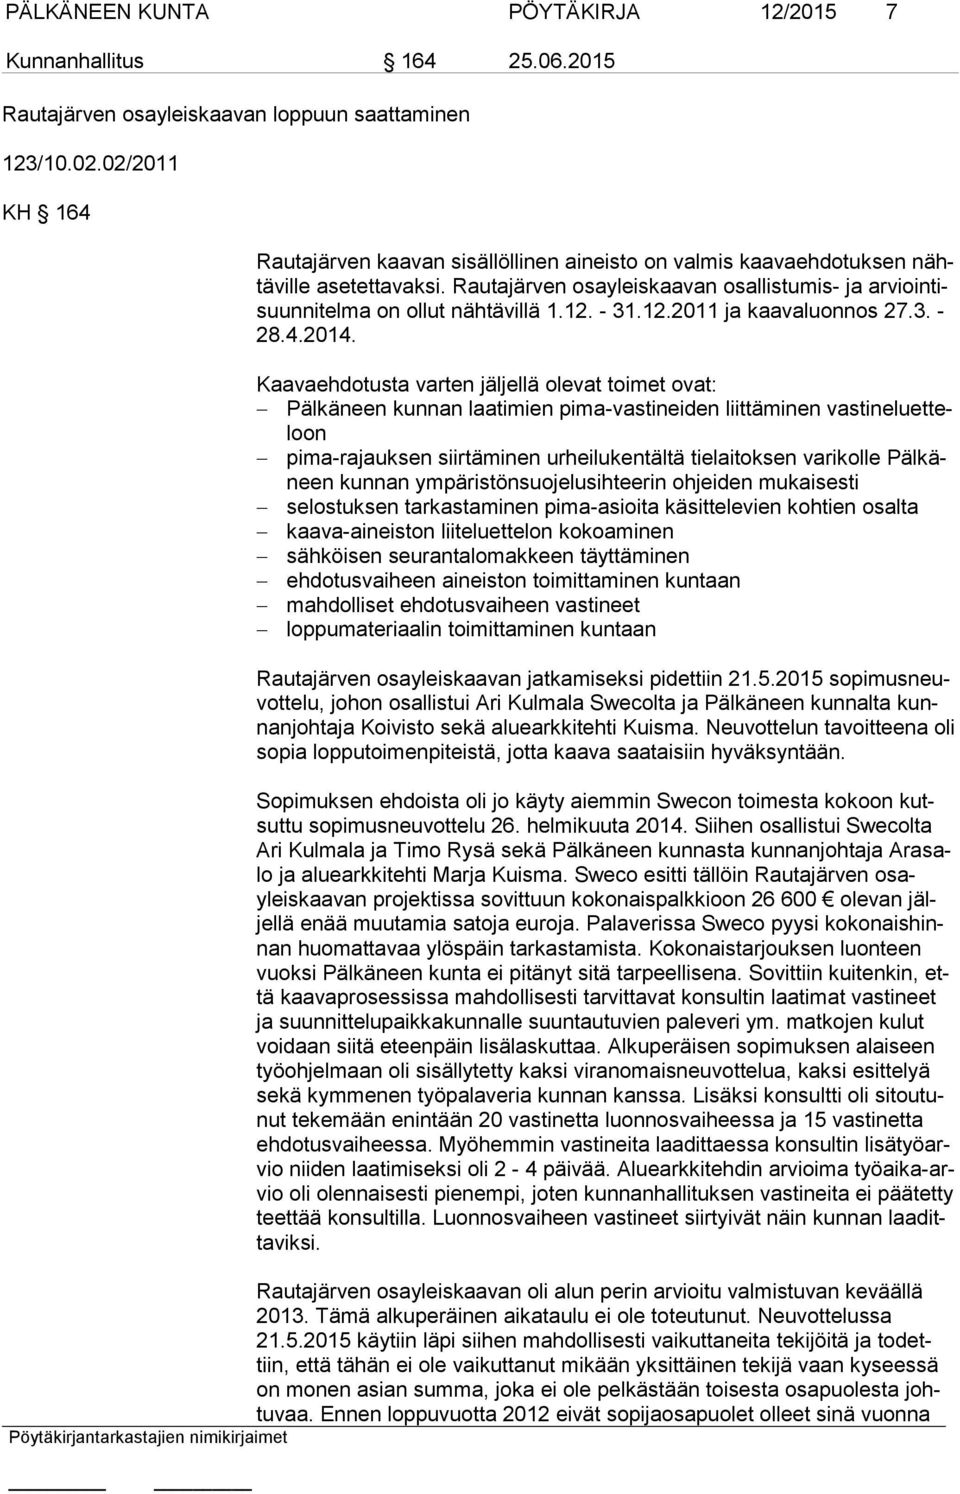 Rautajärven osayleiskaavan osallistumis- ja ar vioin tisuun ni tel ma on ollut nähtävillä 1.12. - 31.12.2011 ja kaavaluonnos 27.3. - 28.4.2014.